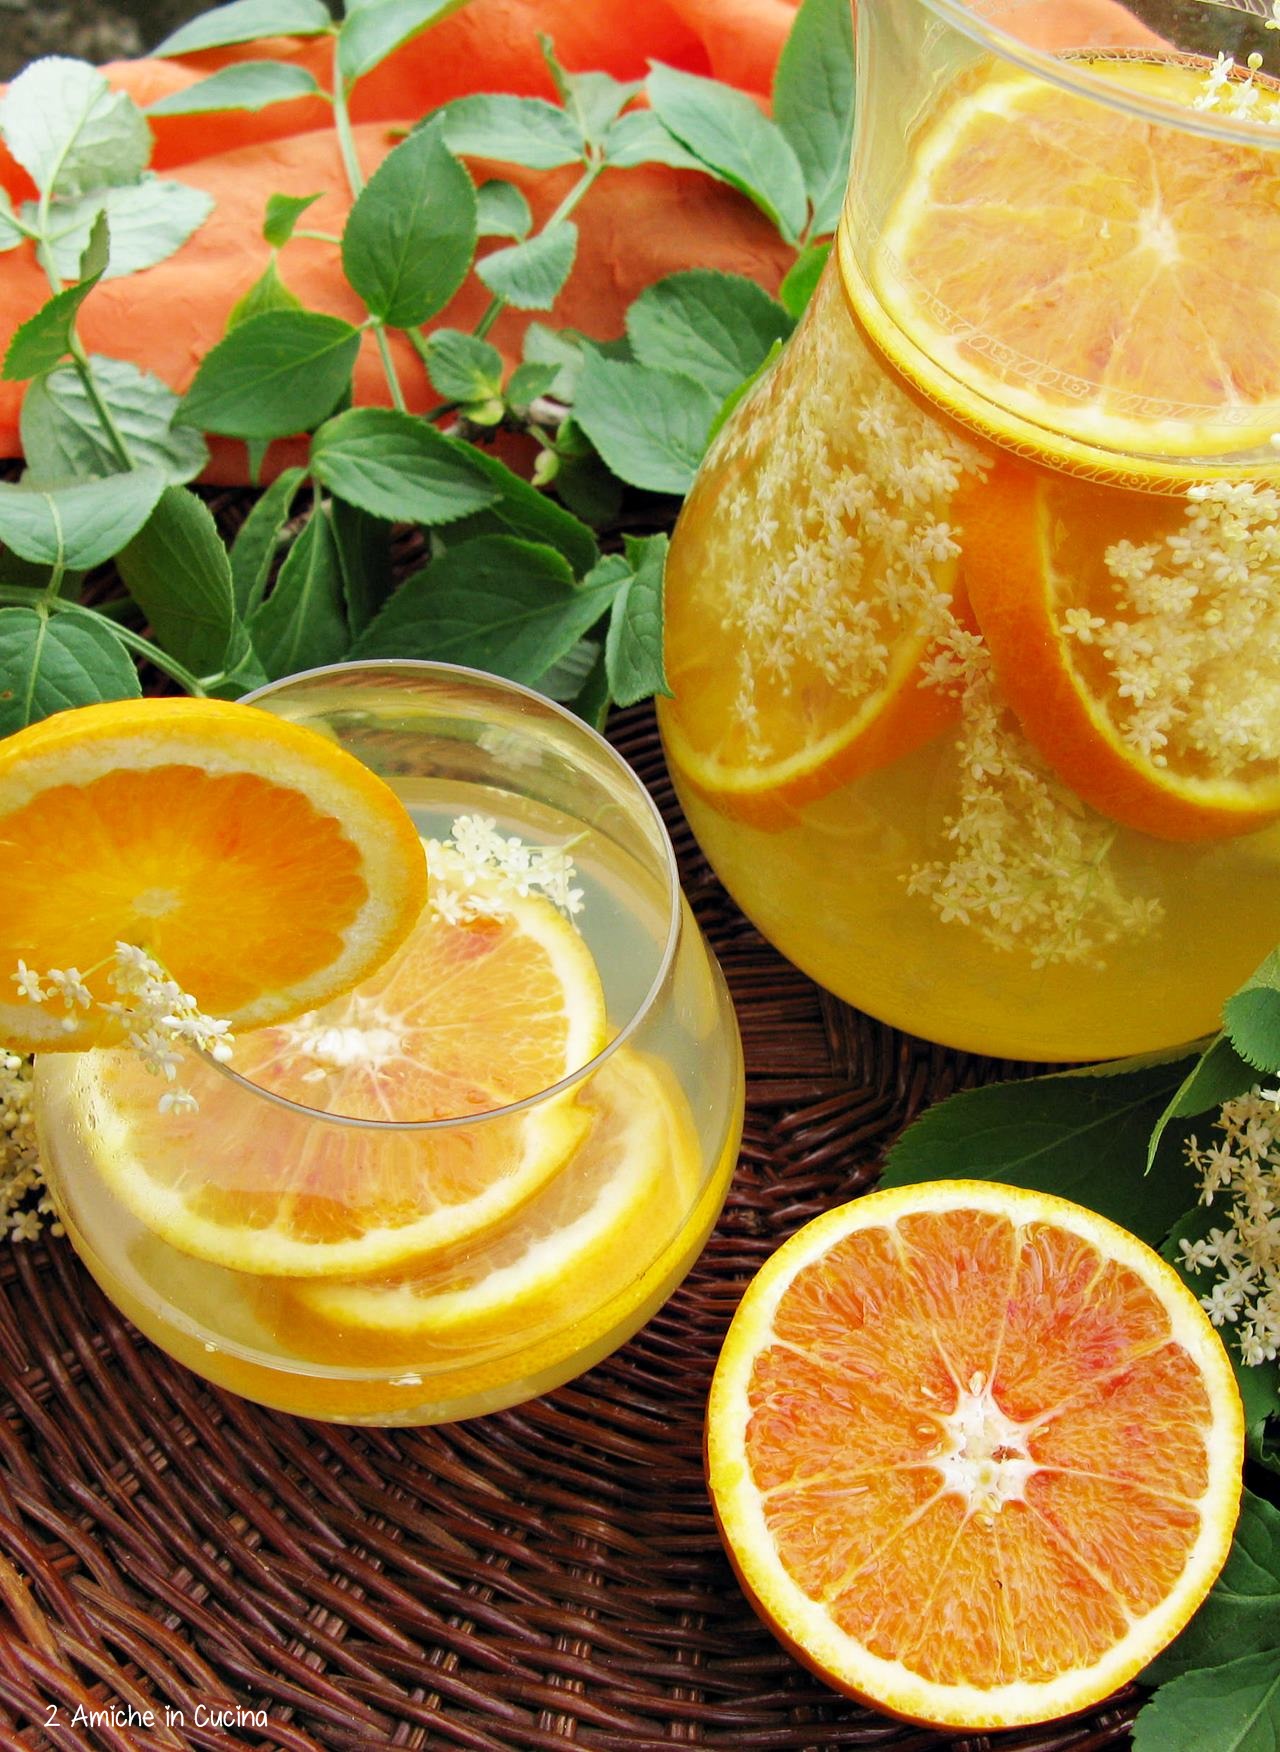 Acqua aromatizzata all'arancia e fiori di sambuco